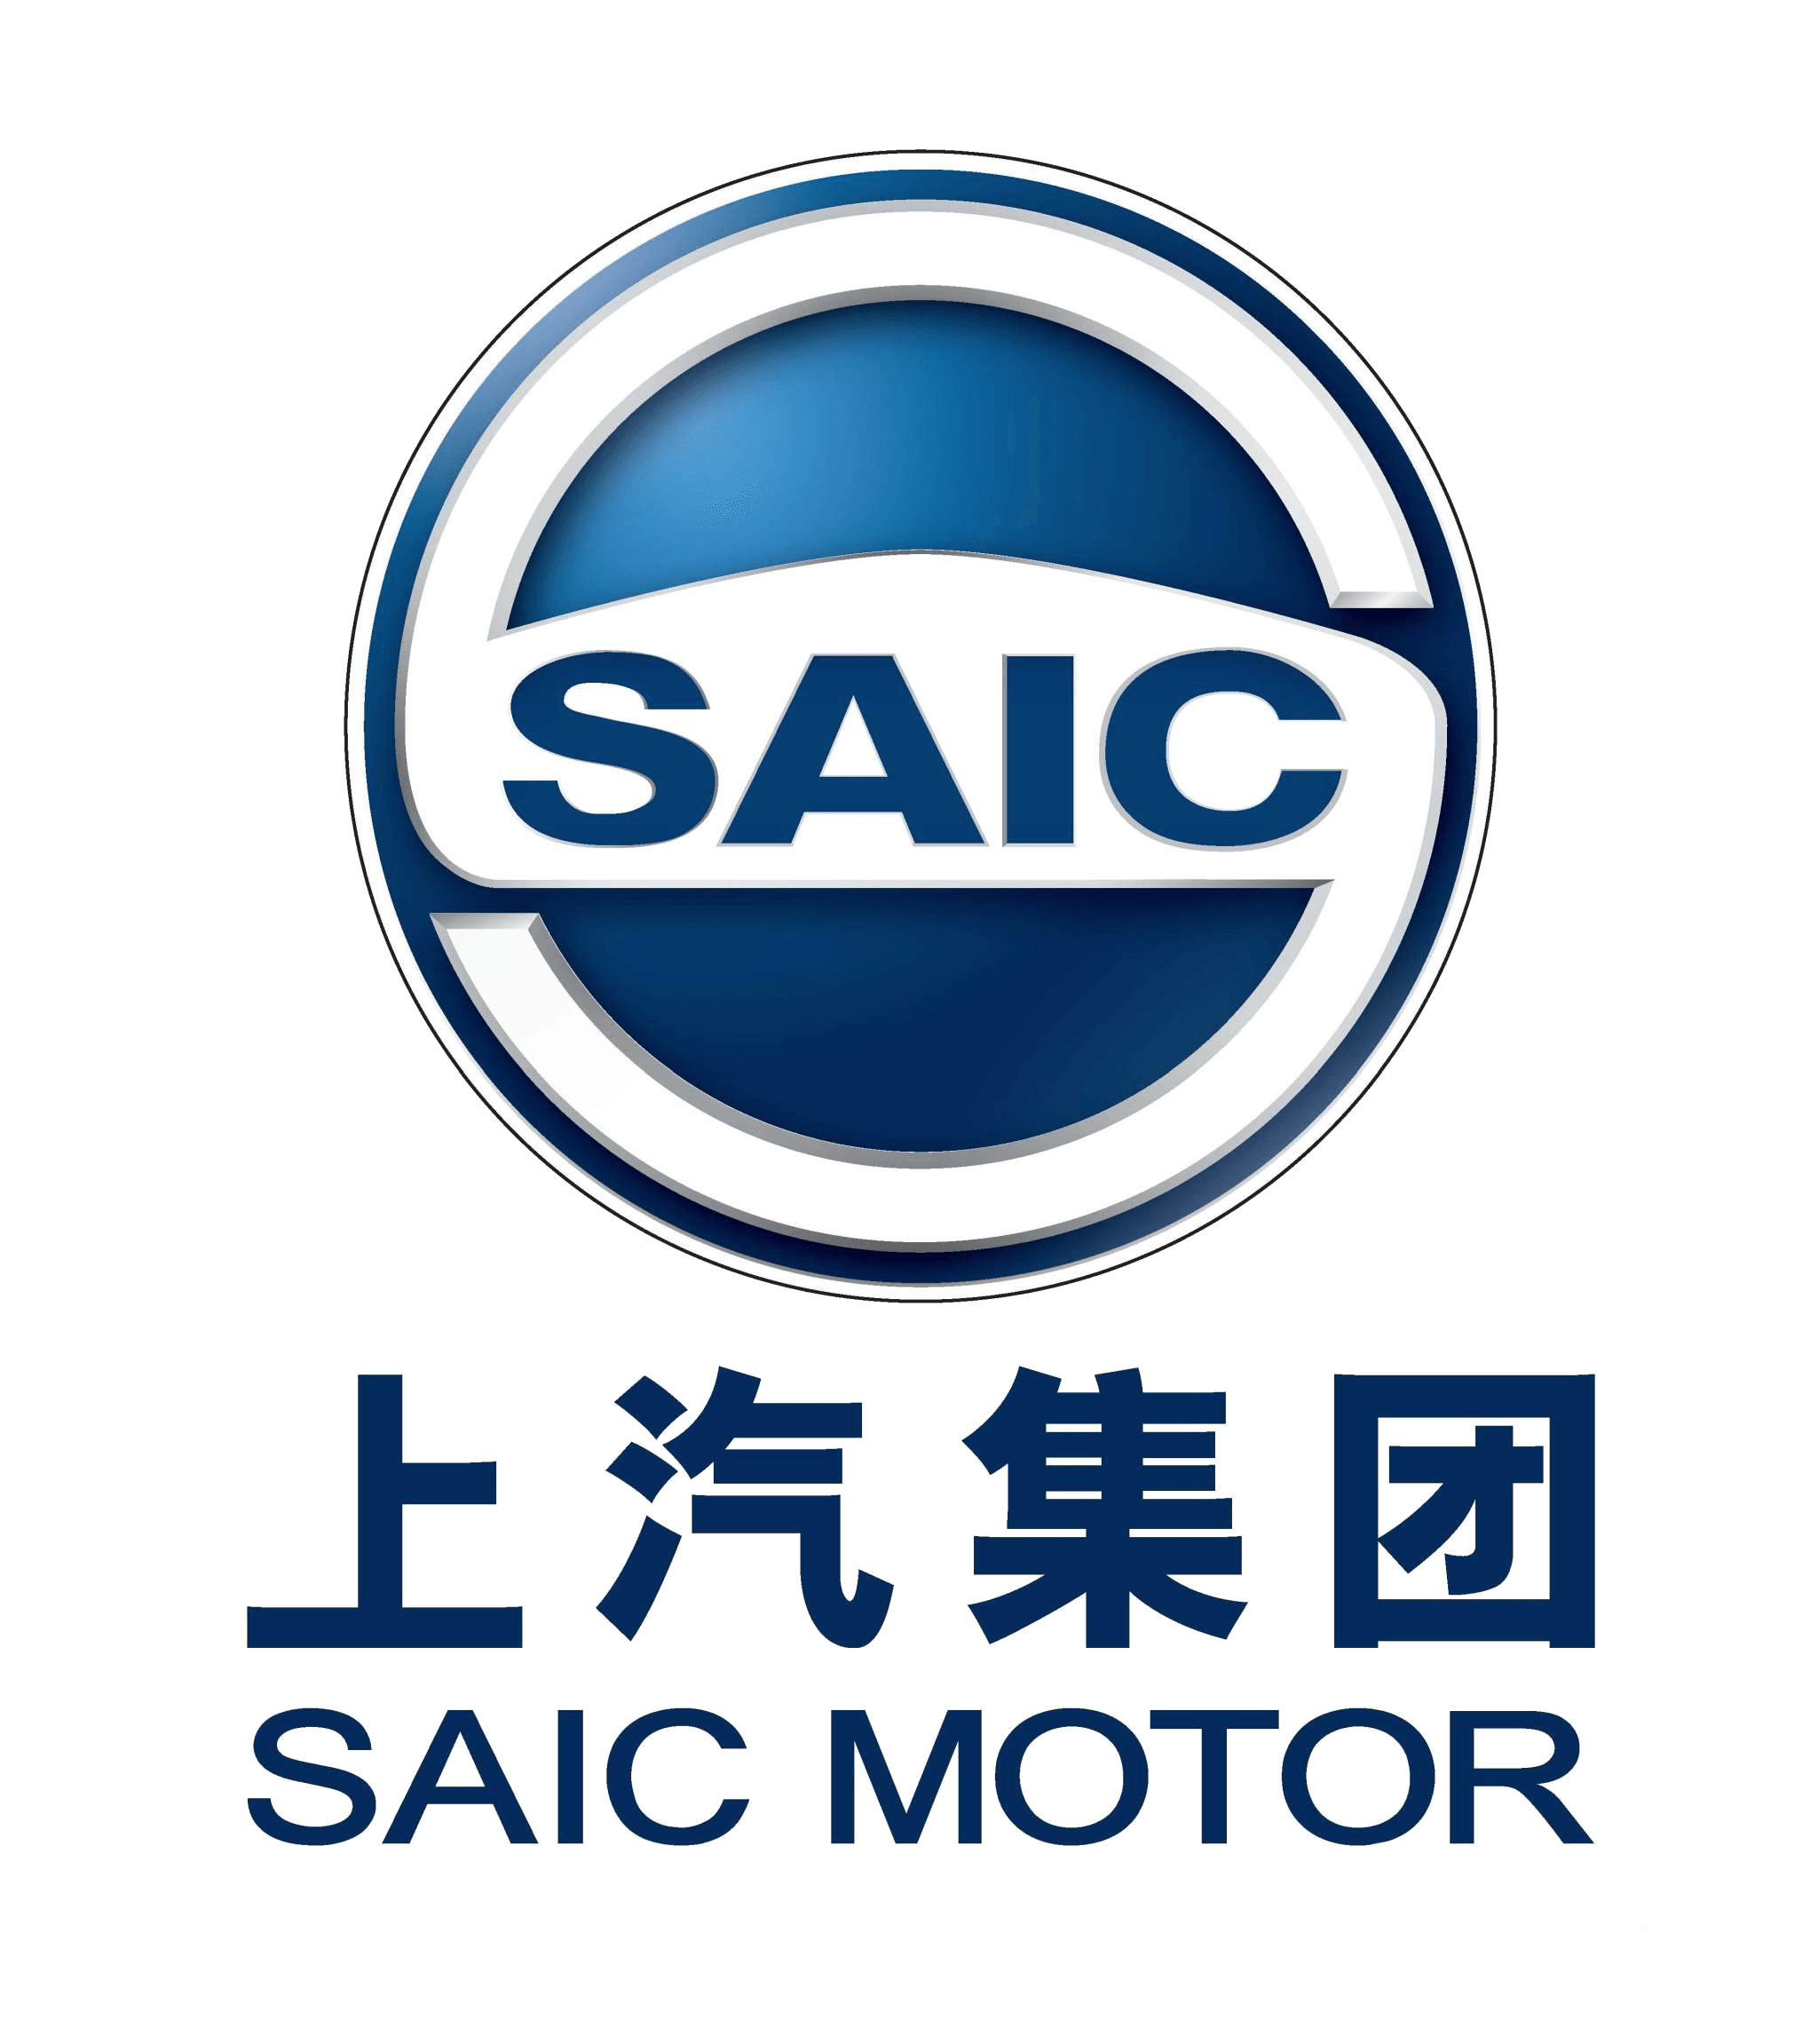 Car Logo Saic Motor icons